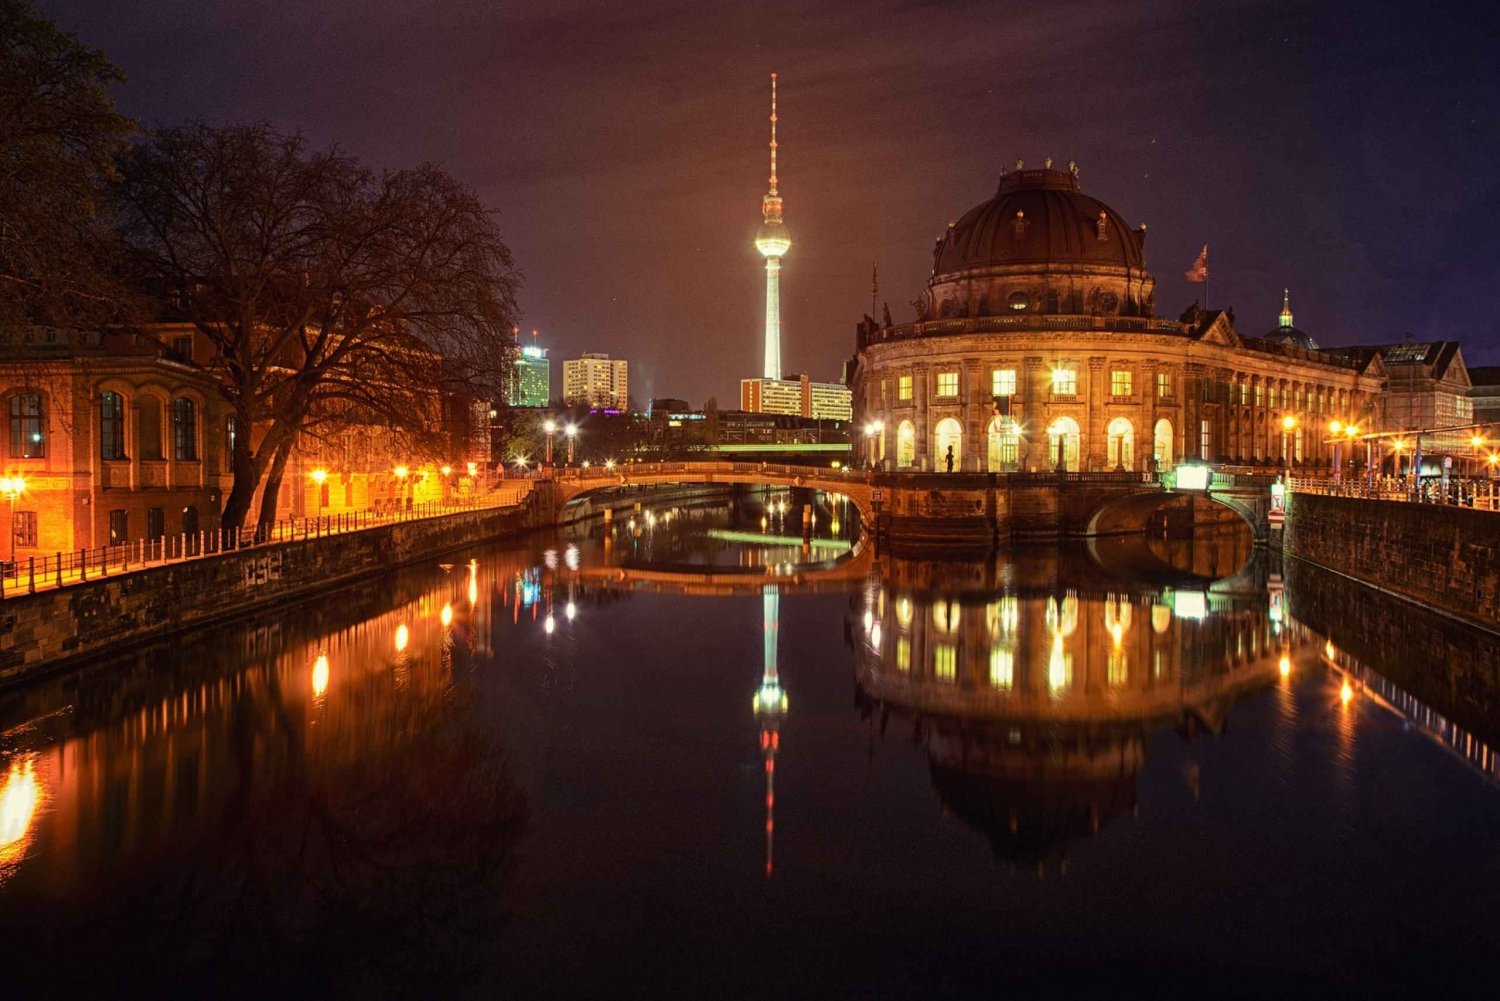 Berlín de Noche: romántico paseo en barco bajo la luna